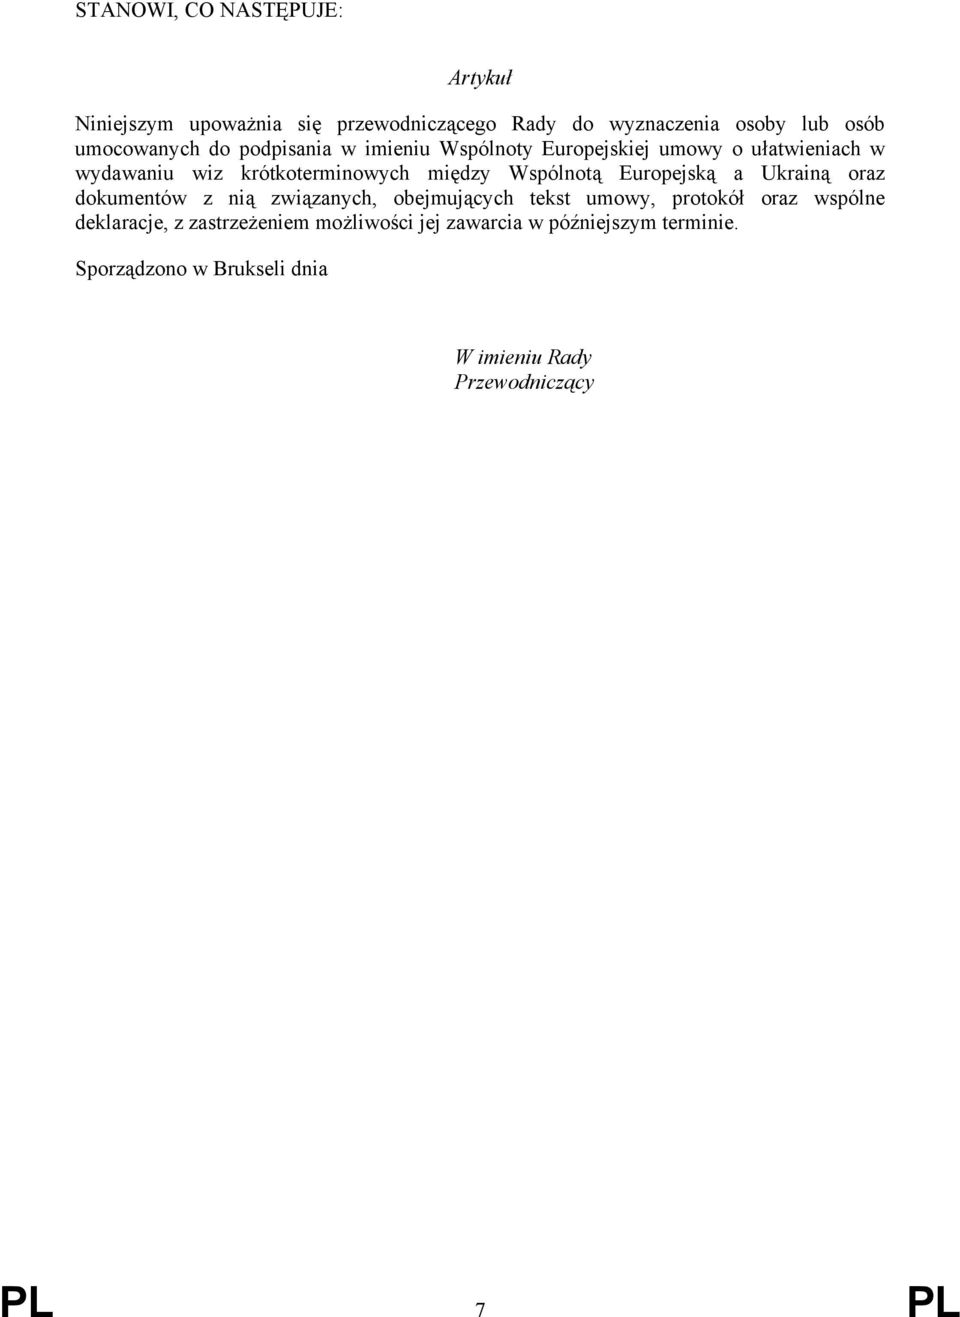 Europejską a Ukrainą oraz dokumentów z nią związanych, obejmujących tekst umowy, protokół oraz wspólne deklaracje, z